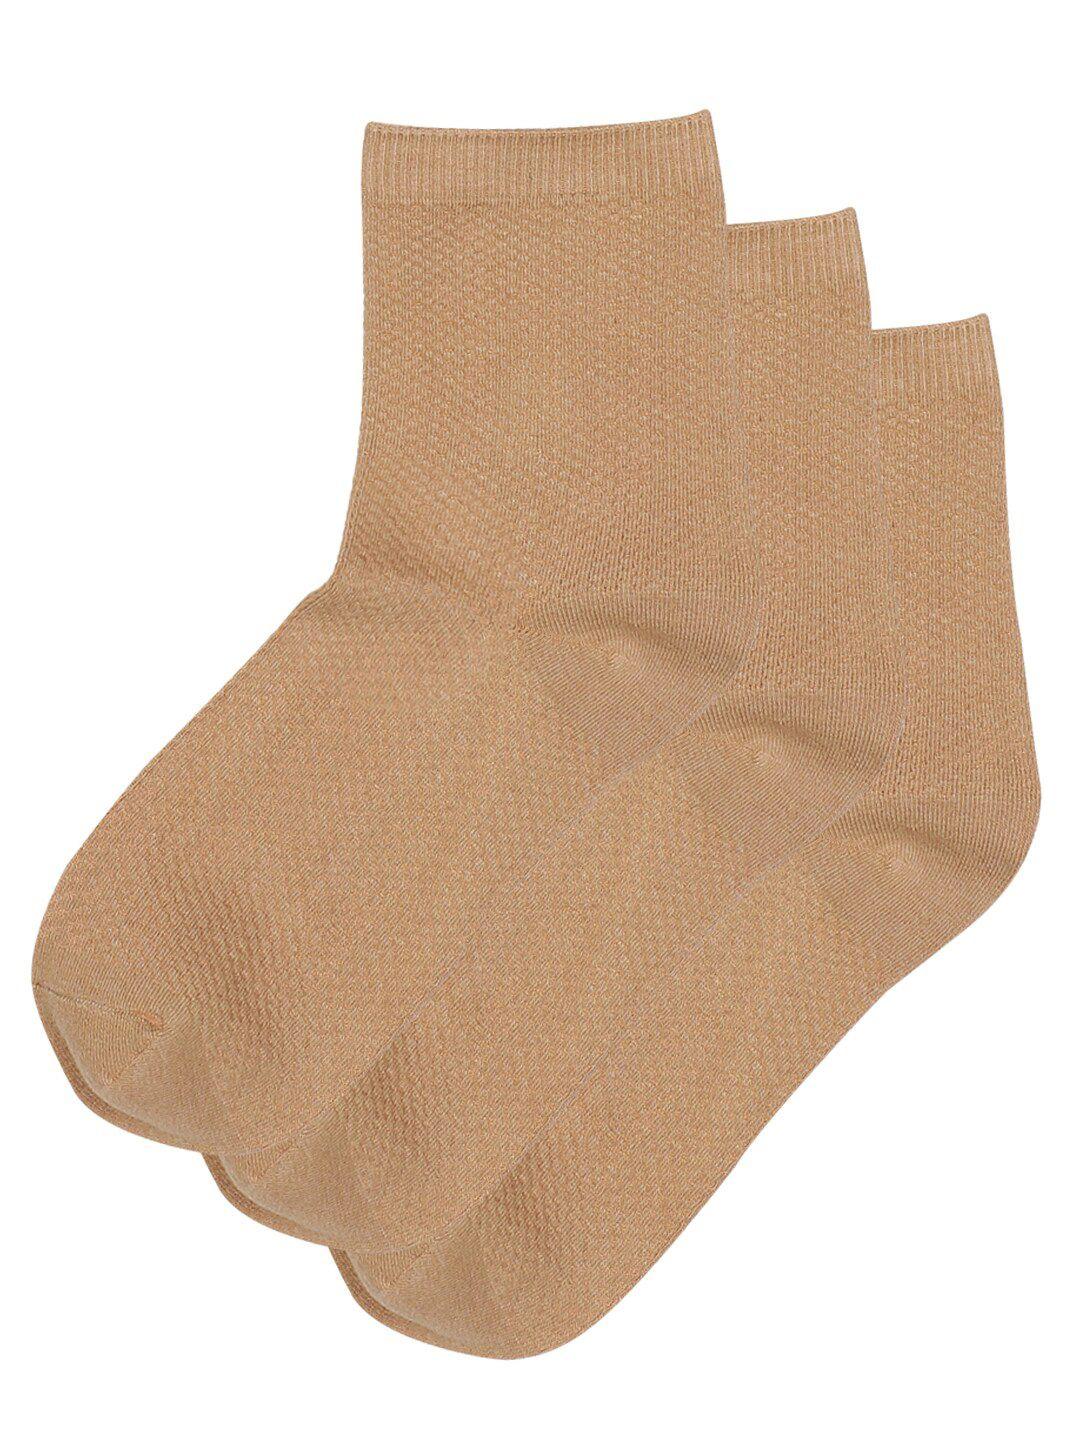 toffcraft men pack of 3 beige solid ankle length cotton socks